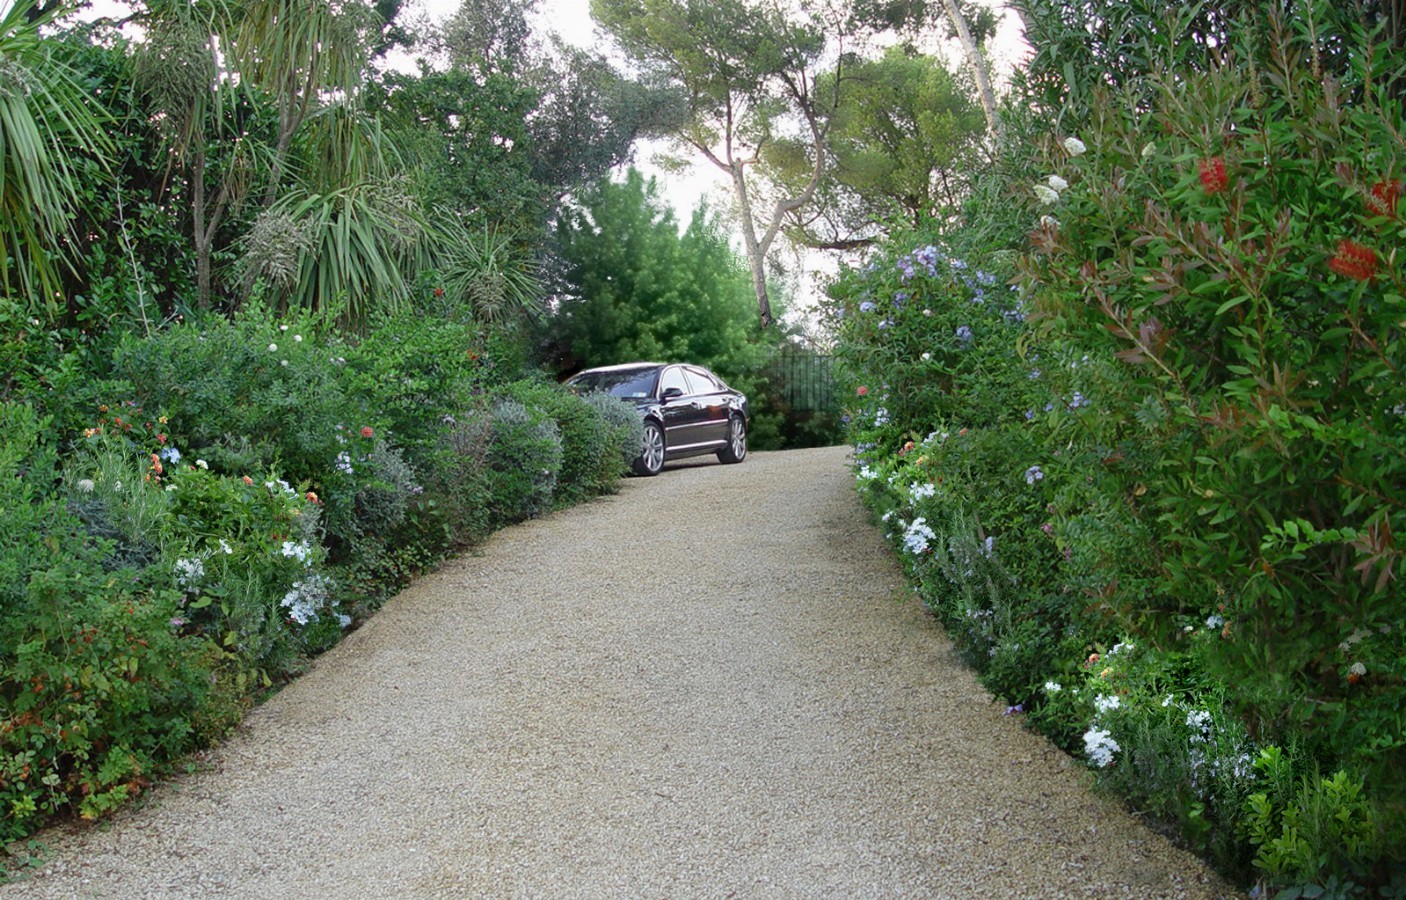 Mediterranean charm - Gardens